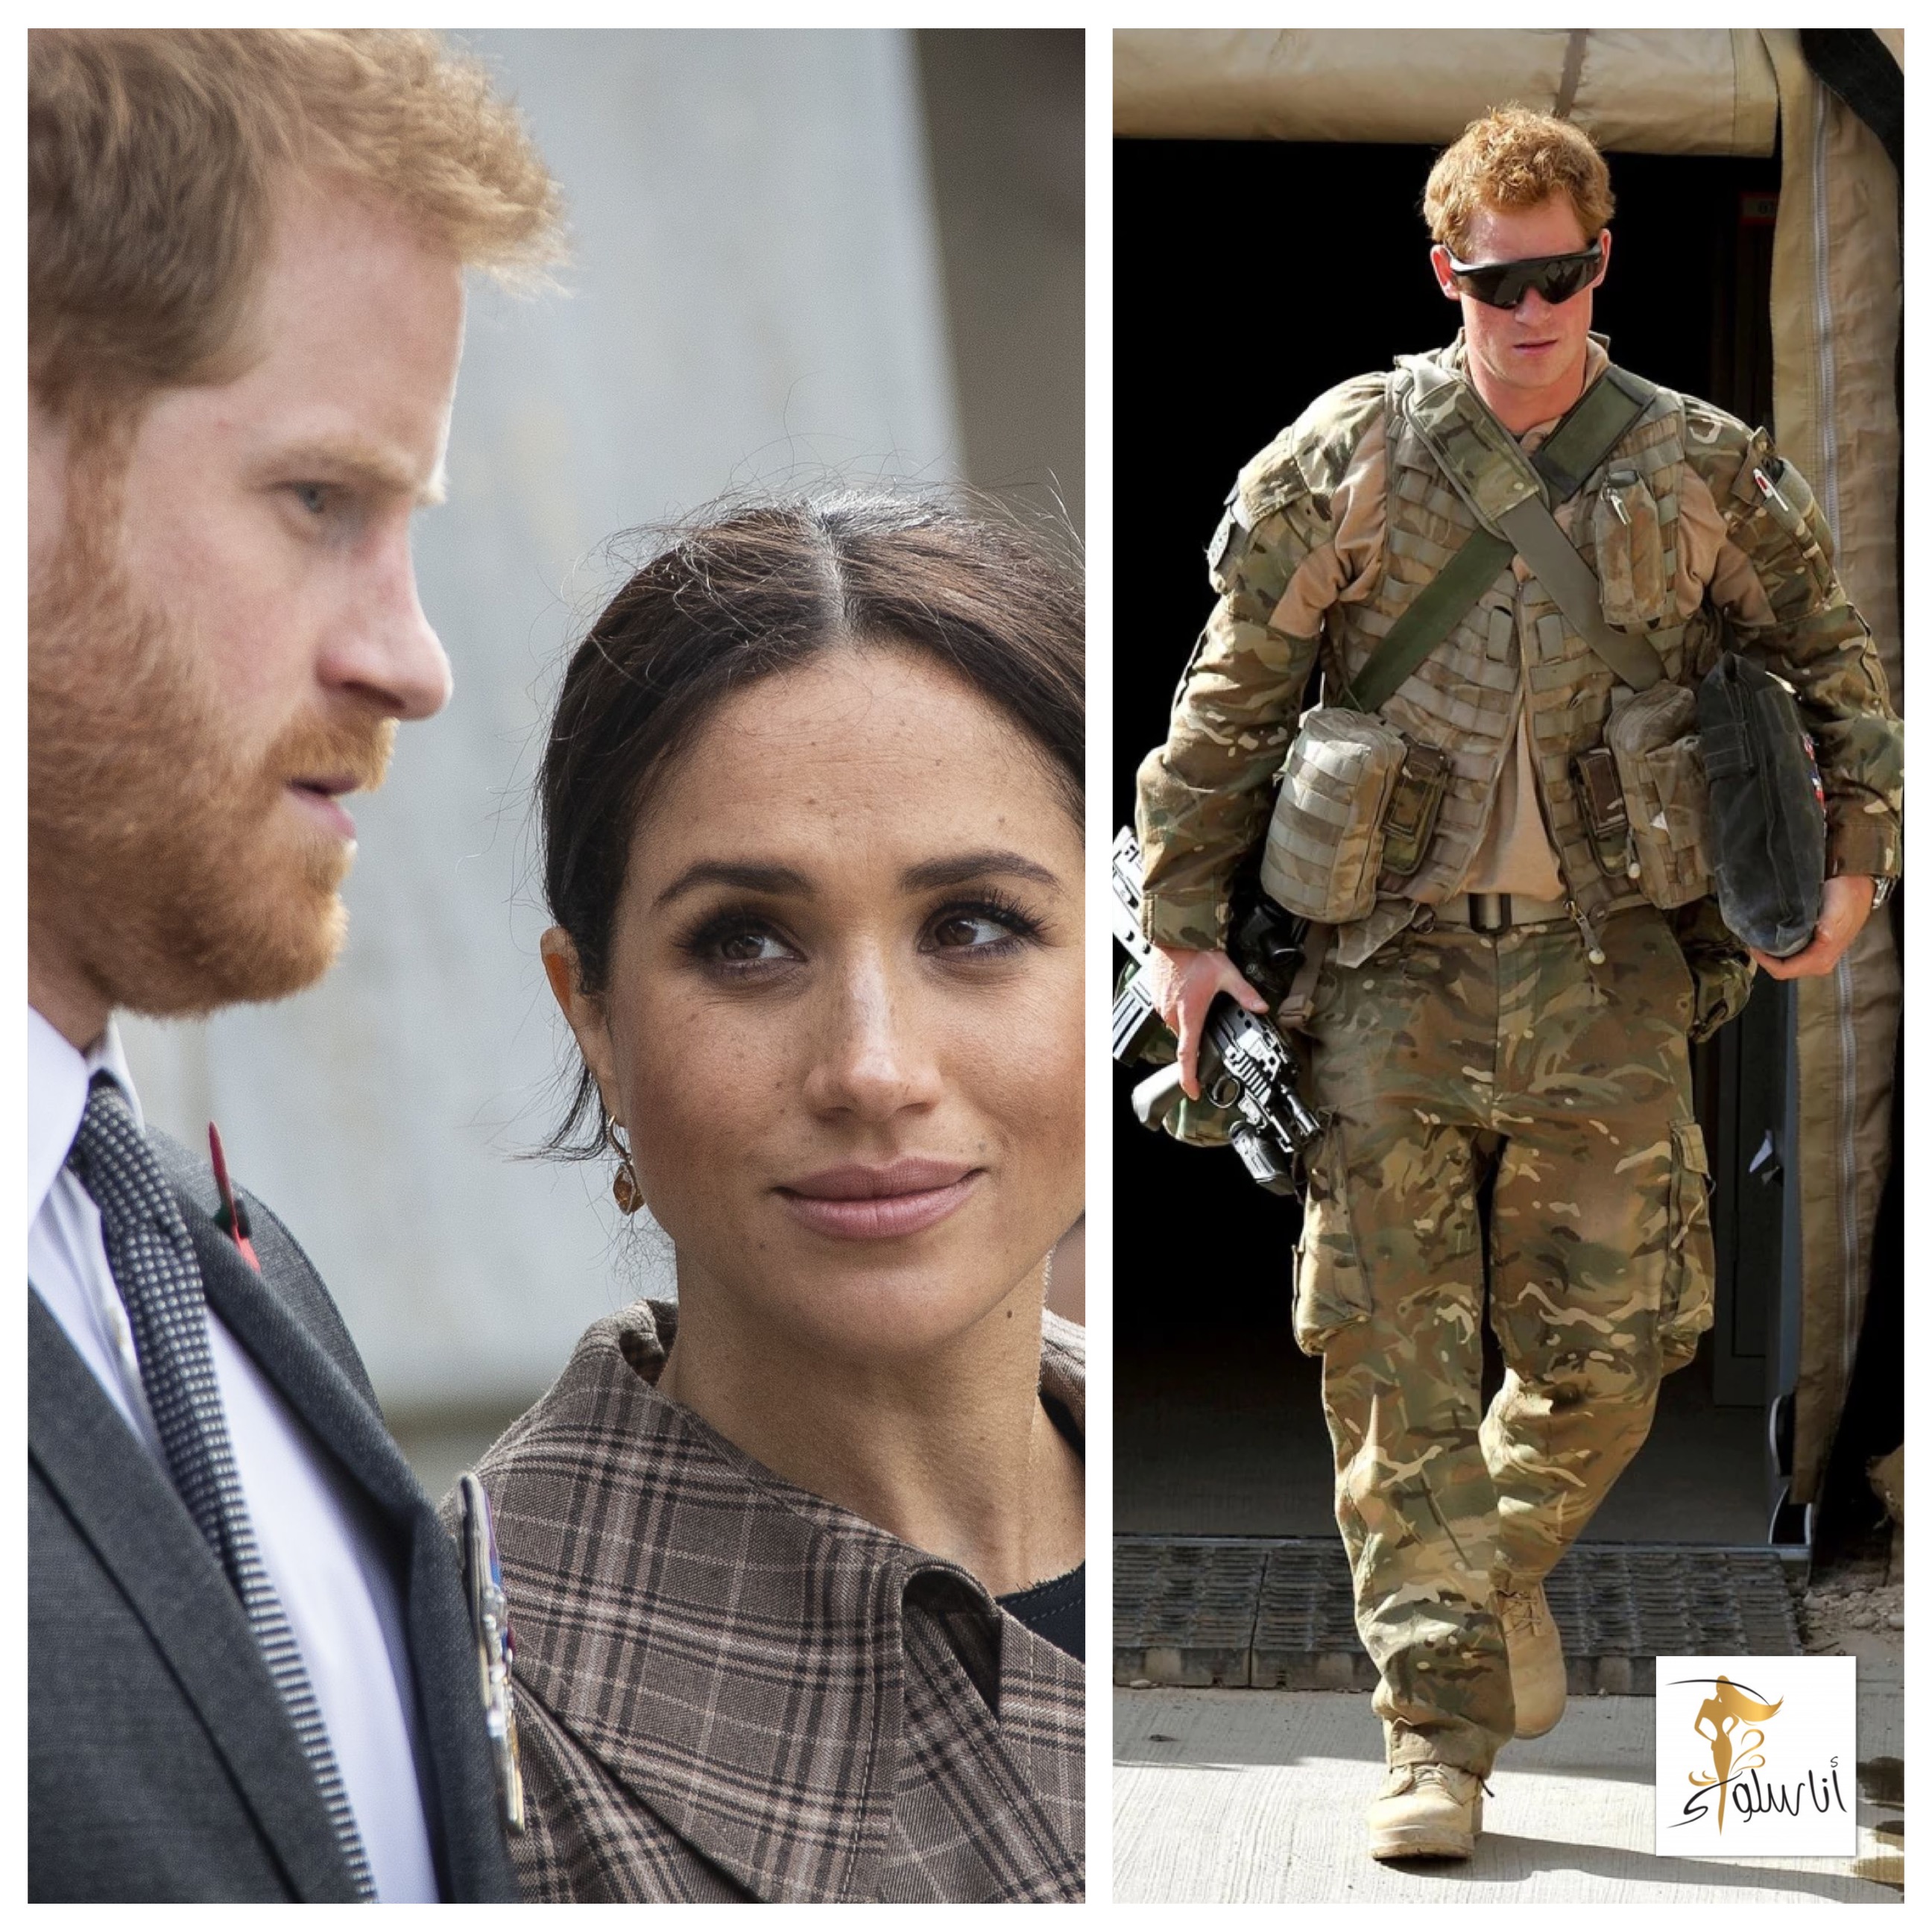 پرنس هری پوشیدن لباس نظامی در مراسم تشییع ملکه ممنوع است